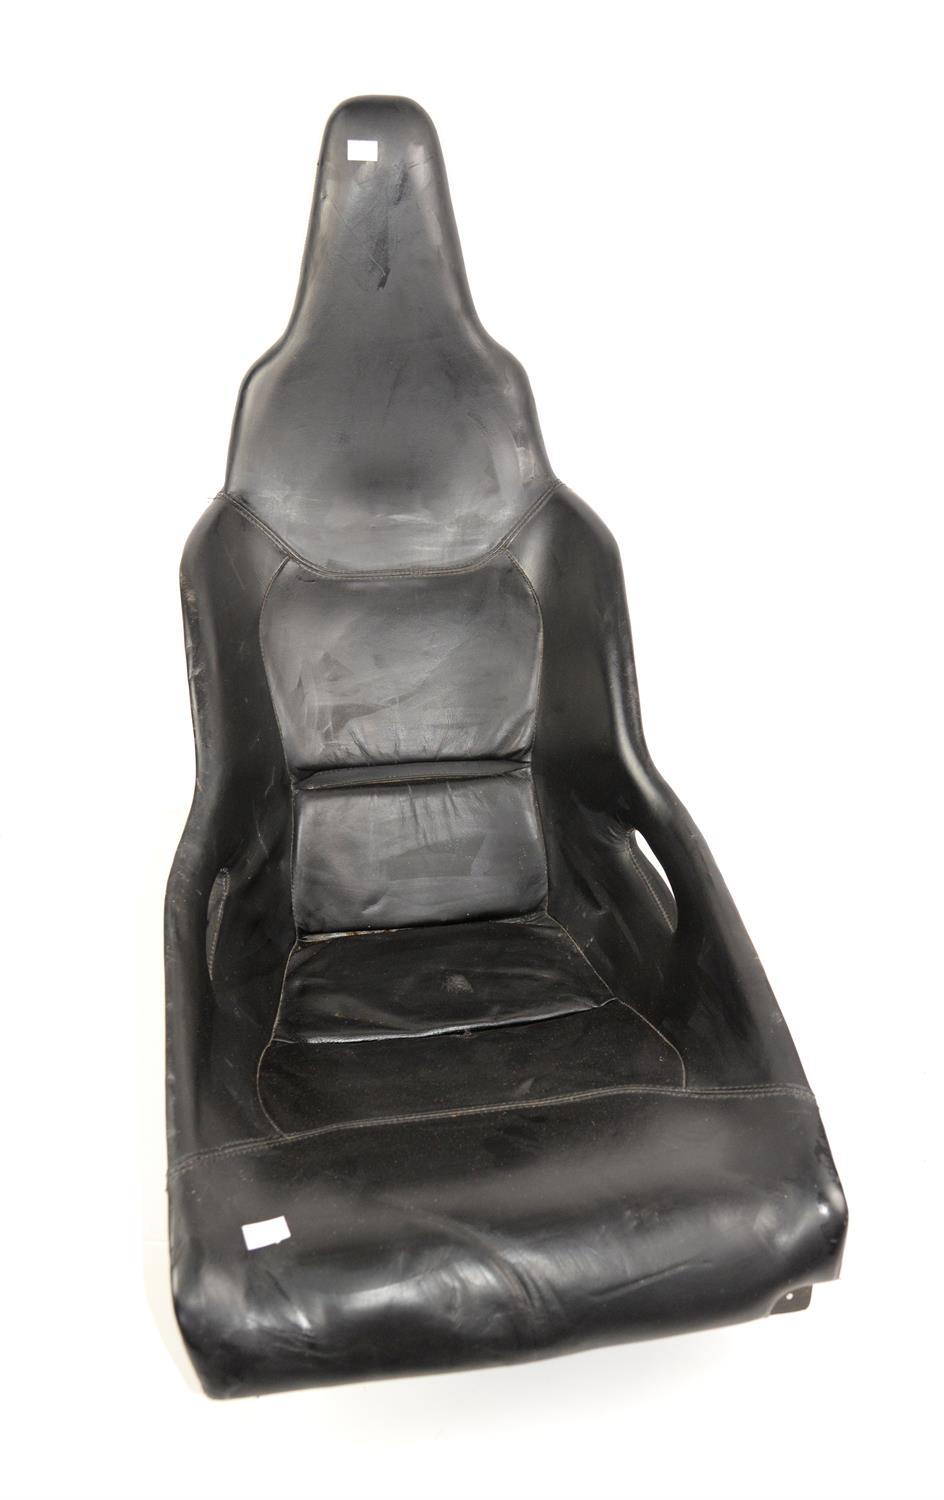 McLaren carbon fibre, leather trimmed road car seat. This carbon fibre leather trimmed car seat